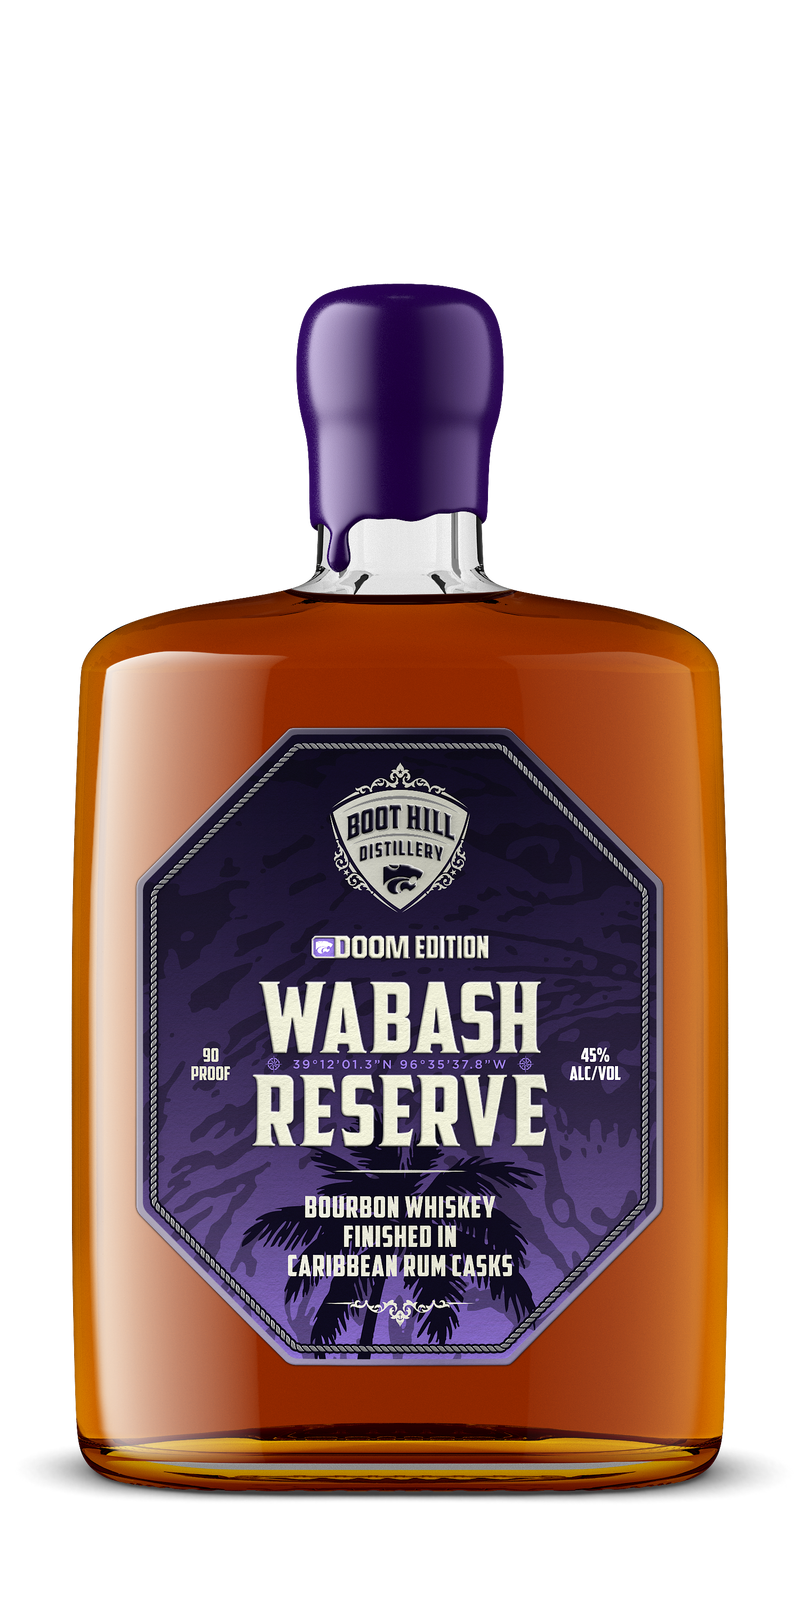 Wabash Reserve: DOOM Edition Bourbon Whiskey Finished in Caribbean Rum Casks - PRESALE